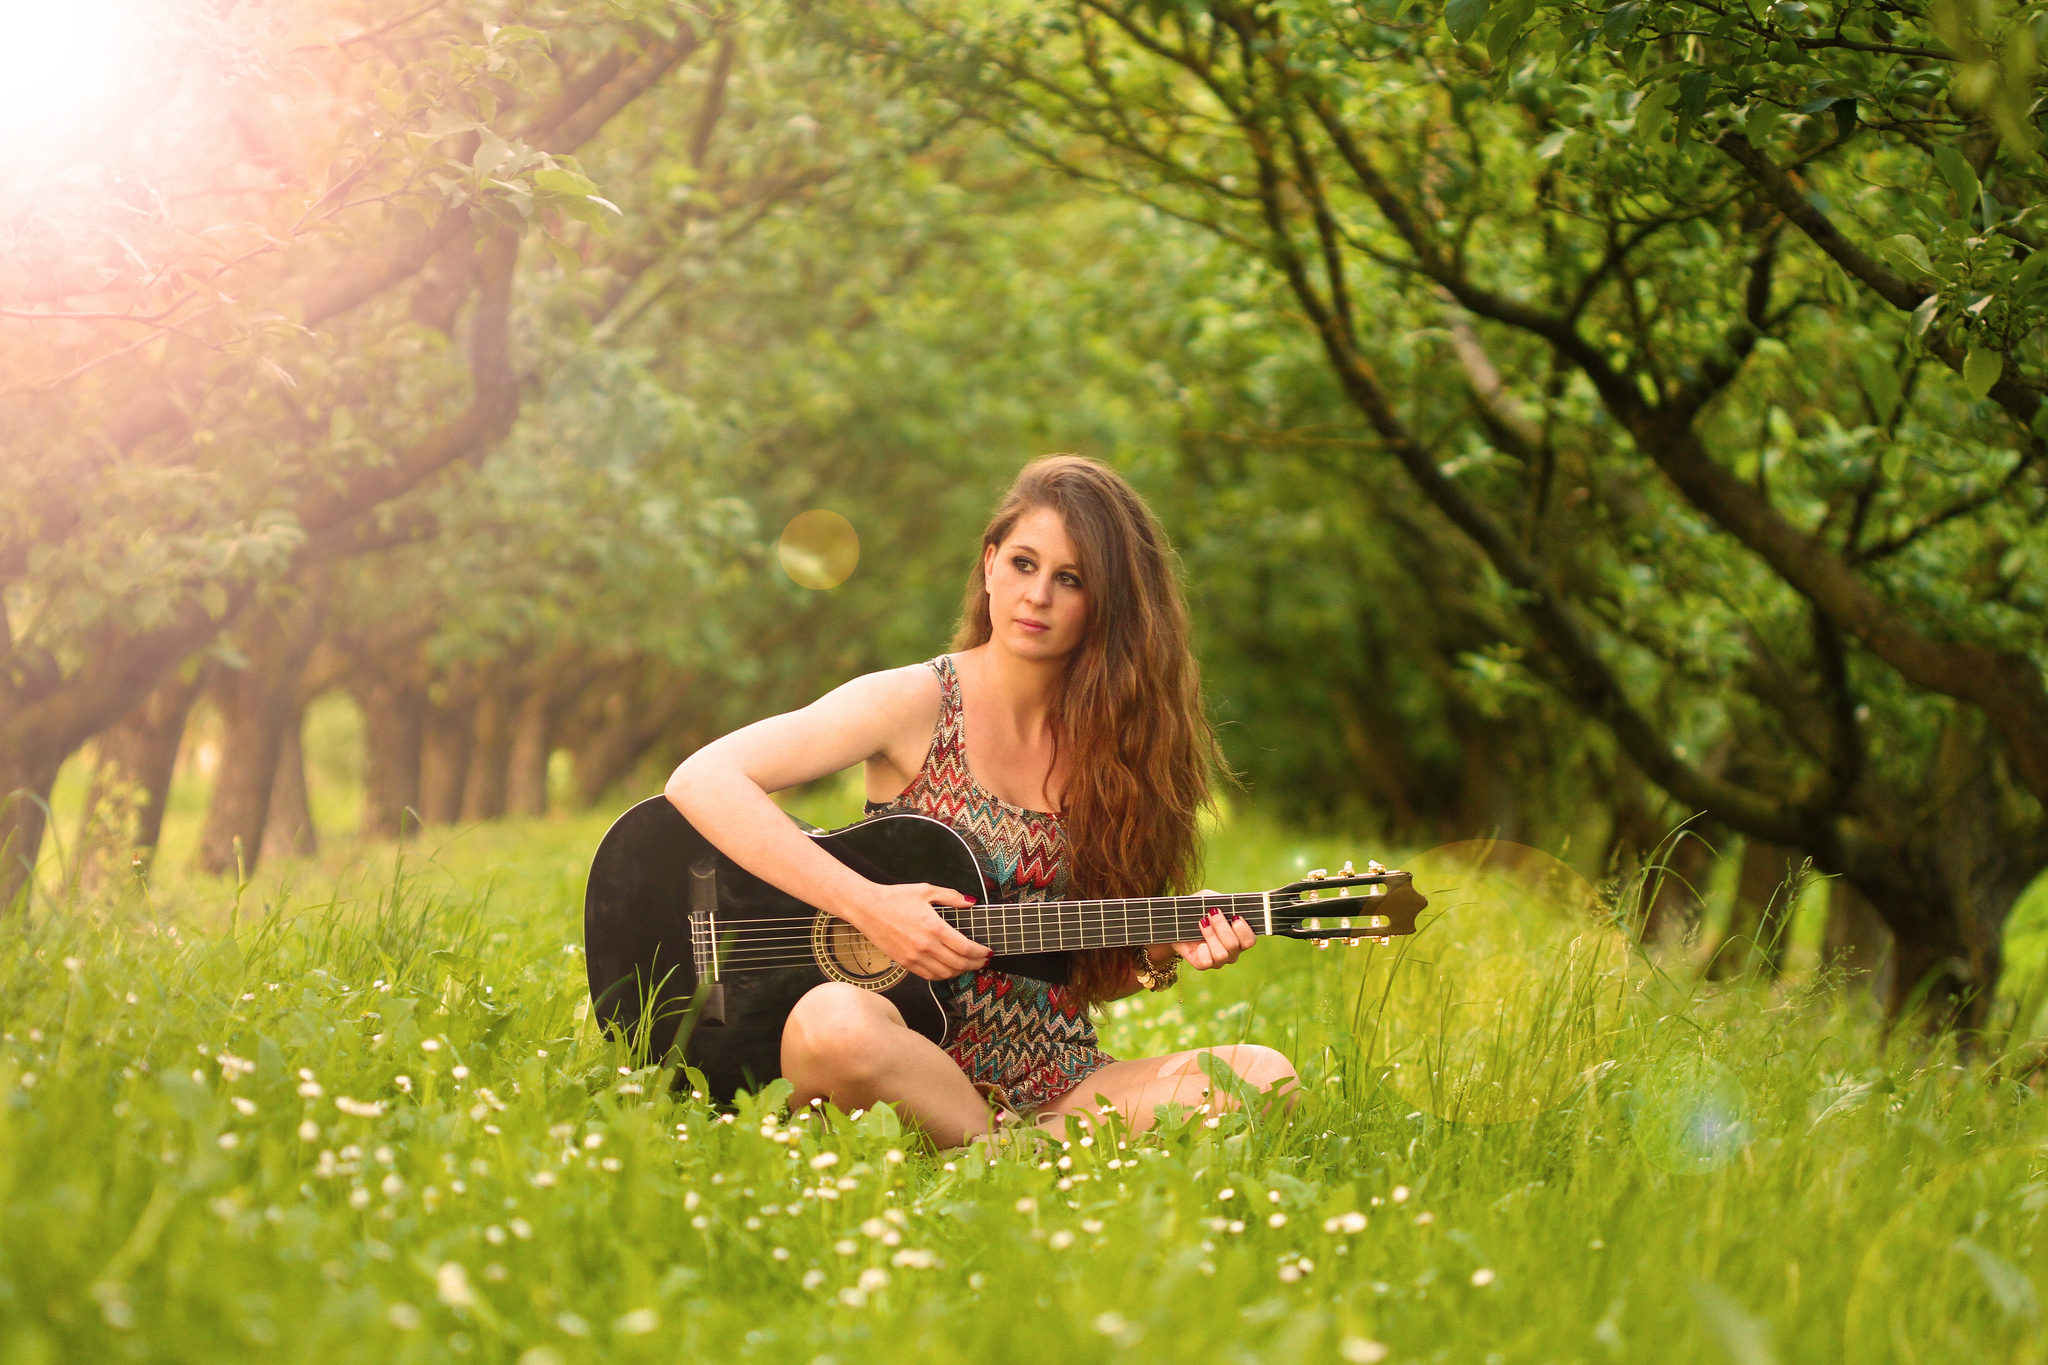 Слушать песню на лету. Красивая девушка с гитарой. Фотосессия с гитарой на природе. Девушка с гитарой на природе.